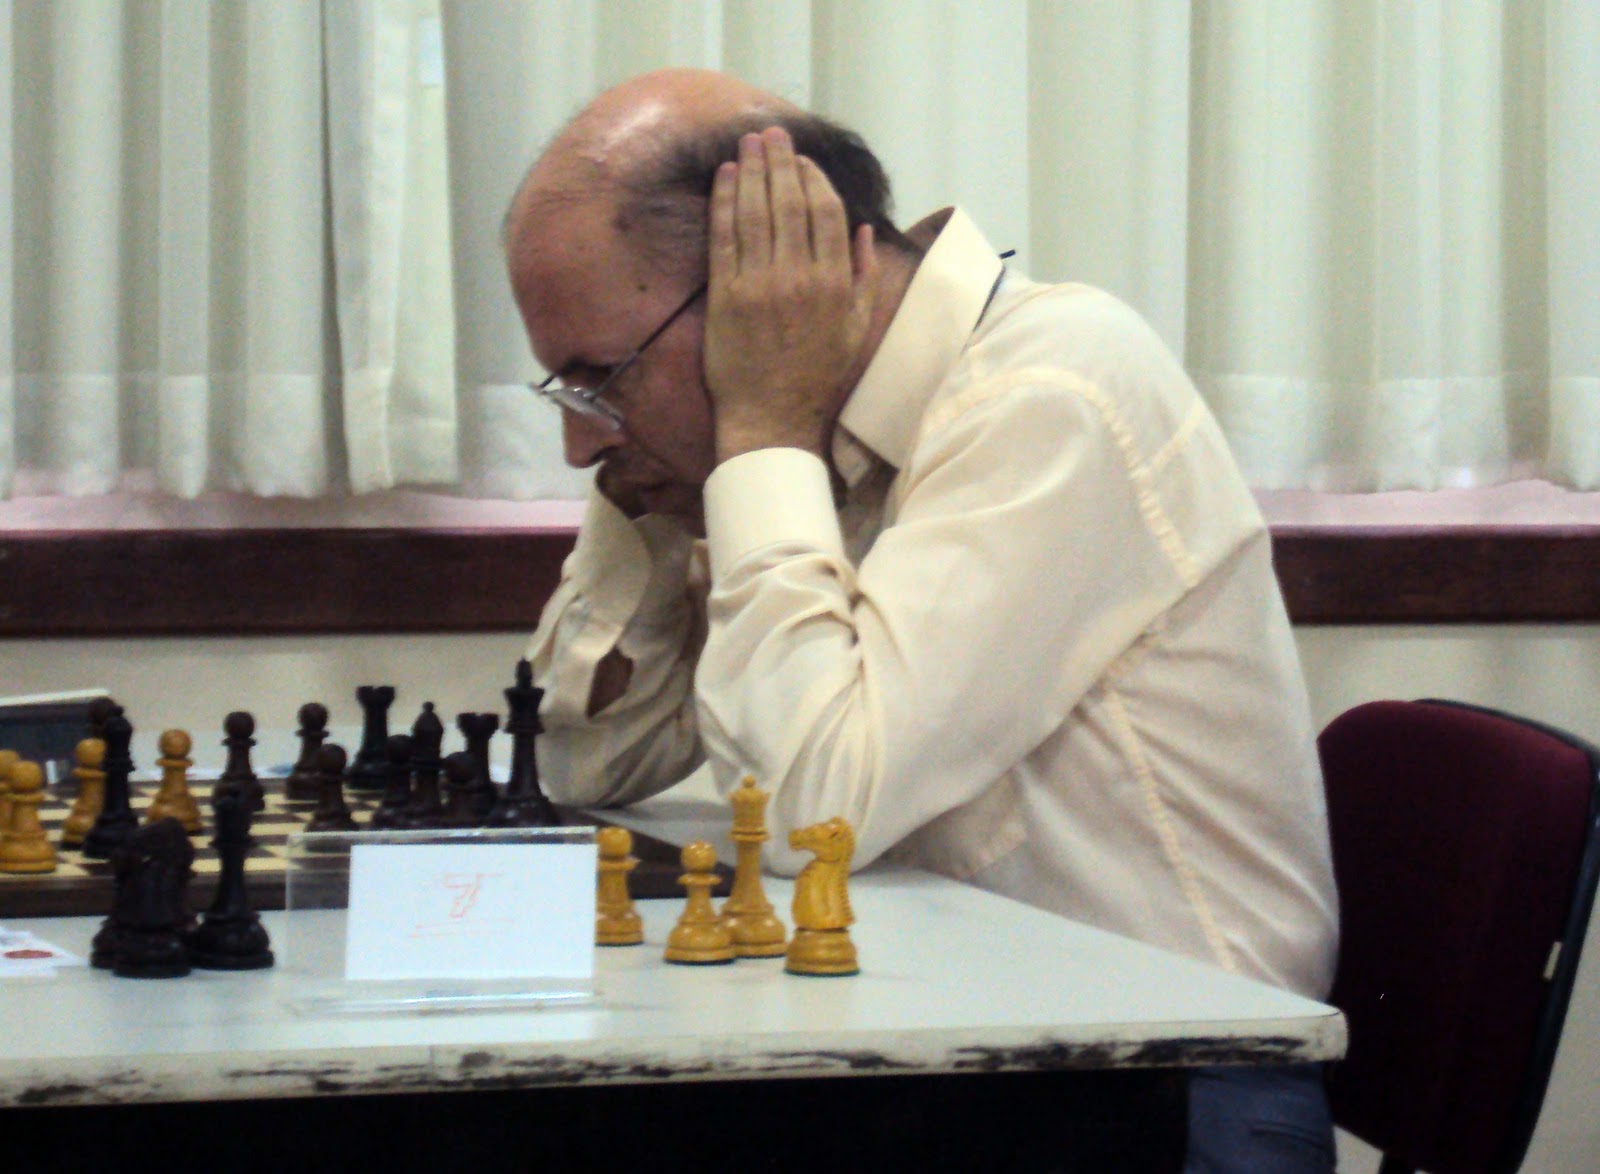 Chess.com Português on X: 23 de janeiro é aniversário da lenda máxima do  xadrez brasileiro: Henrique Mecking! Nossos parabéns ao Mequinho! Jogador  que foi top 3 mundial e nossa maior estrela!  /